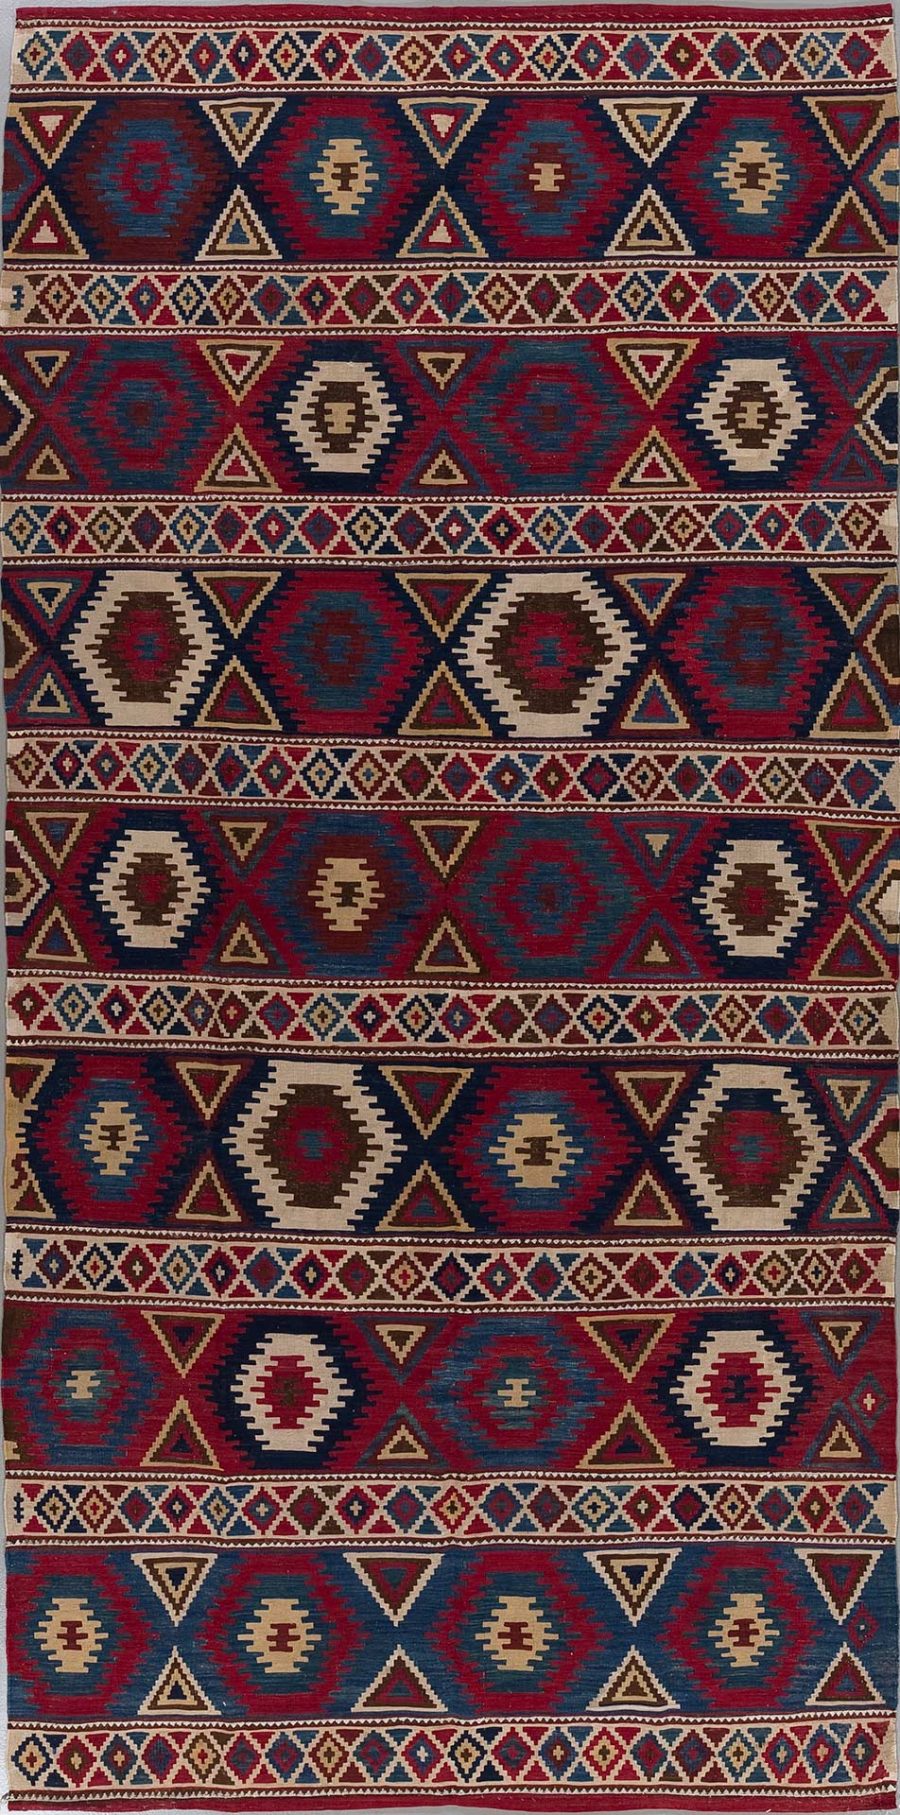 Traditioneller handgewebter Teppich mit wiederholenden geometrischen Mustern und Symmetrien in Rot-, Blau-, Beige- und Brauntönen.